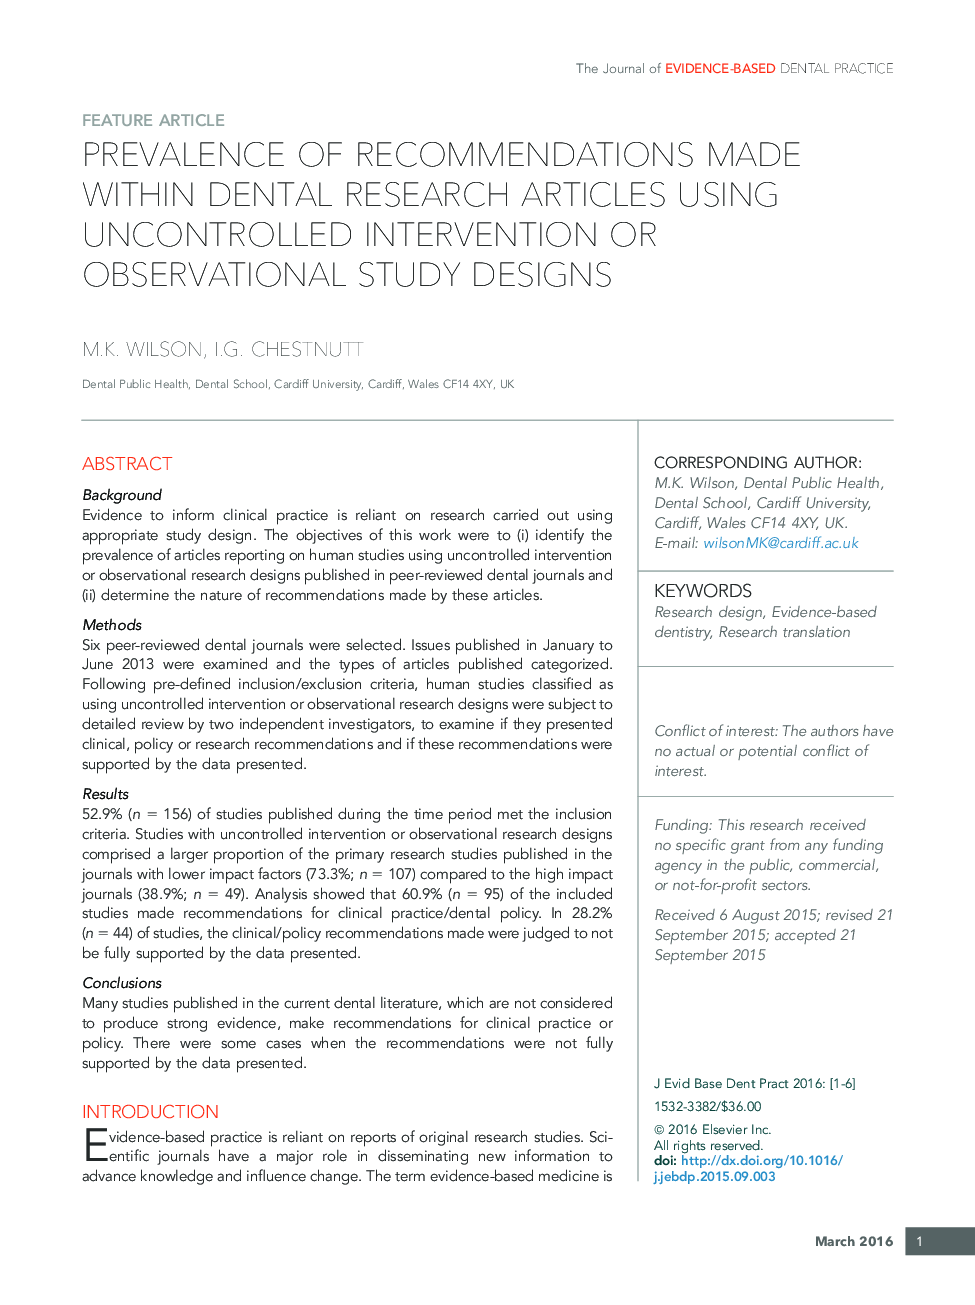 شیوع توصیه هایی که در مقالات پژوهشی دندانپزشکی انجام می شود با استفاده از مداخلات کنترل نشده یا طرح های تحقیقاتی مشاهده شده 